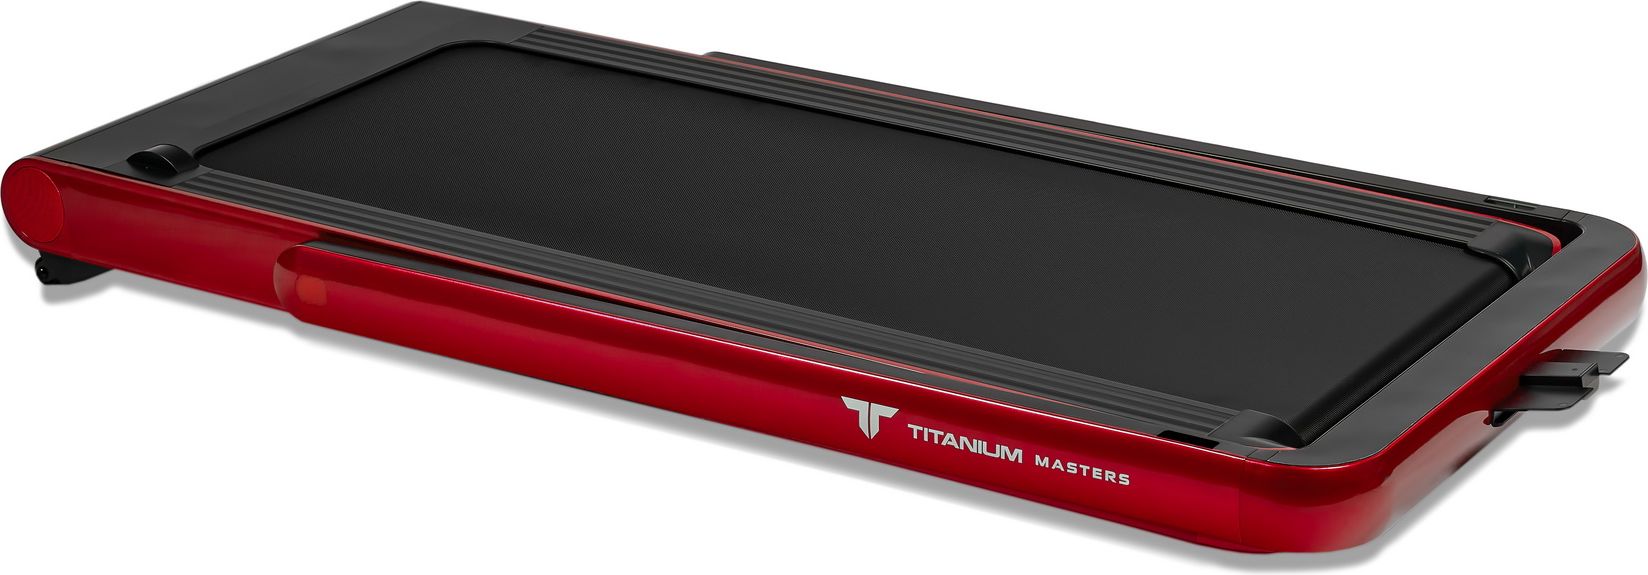 Беговая дорожка Titanium Masters Slimtech C20, красная